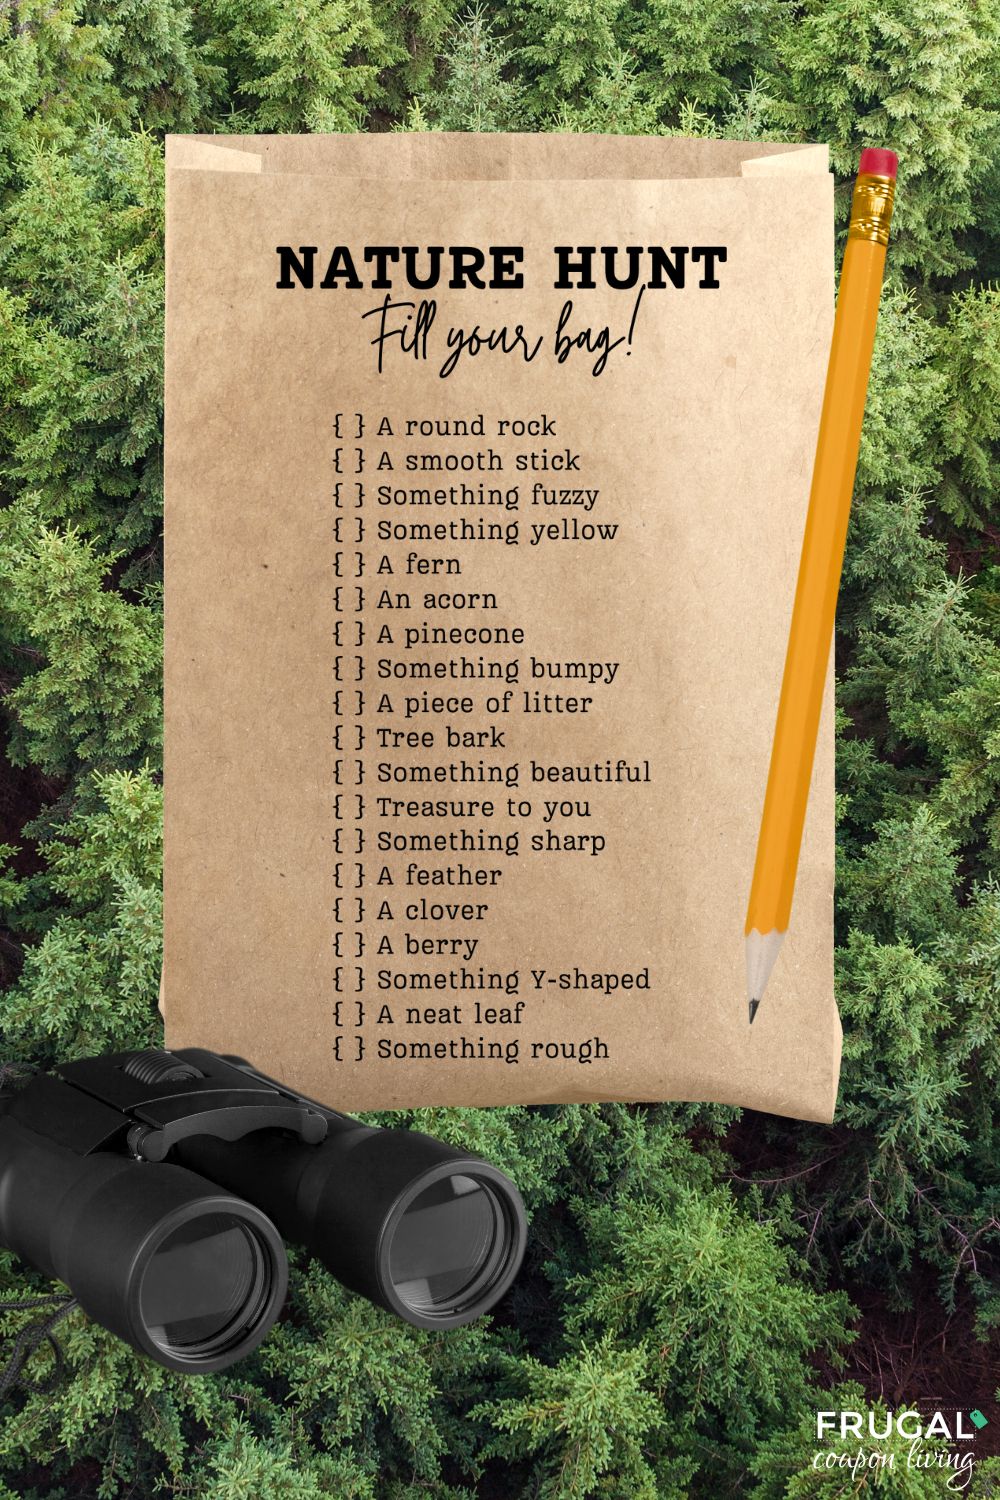 Nature Walk Scavenger Hunt - Brown Bag Edition!